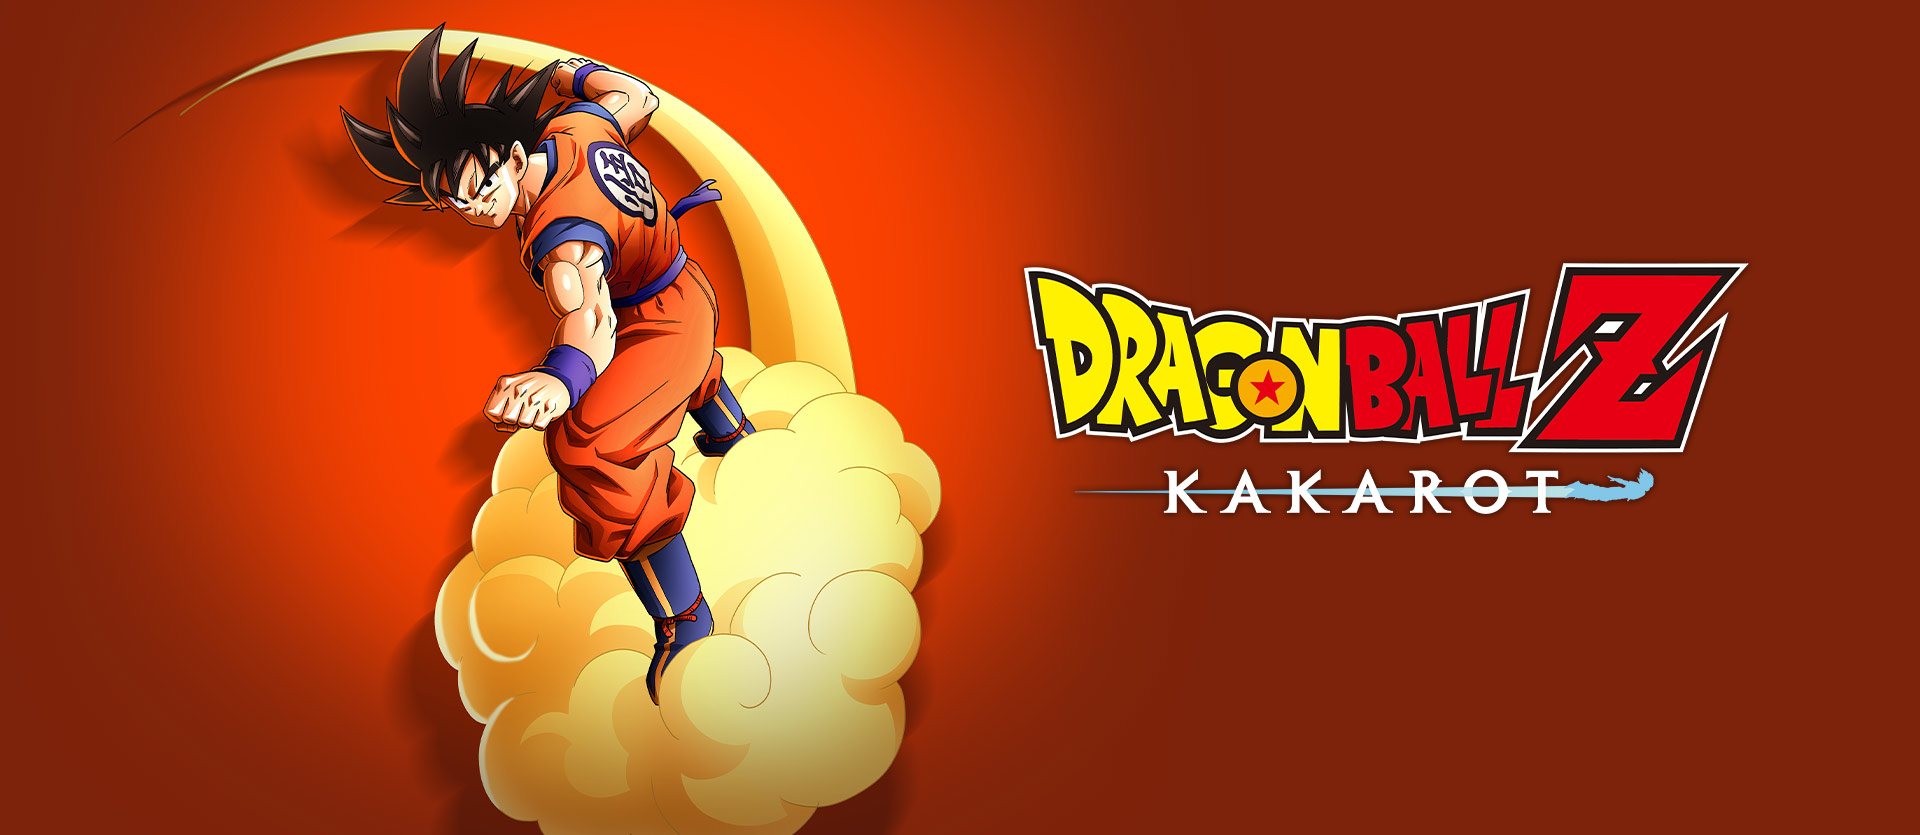 Dragon Ball Z: Kakarot-next-gen-upgrade